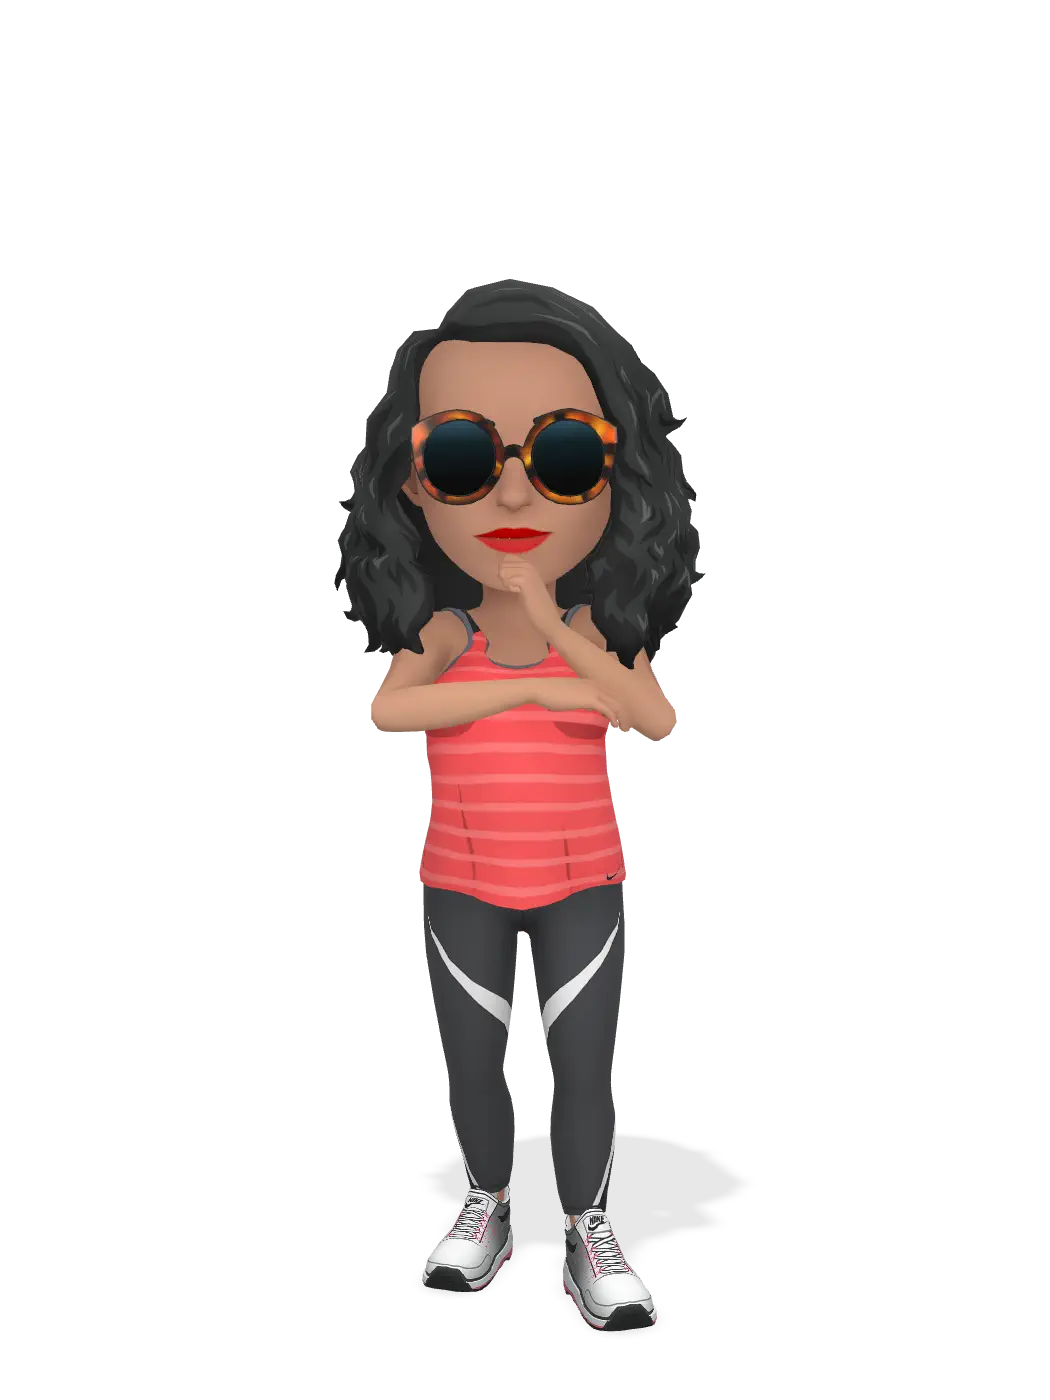 3D Bitmoji for shoe-addiction avatar